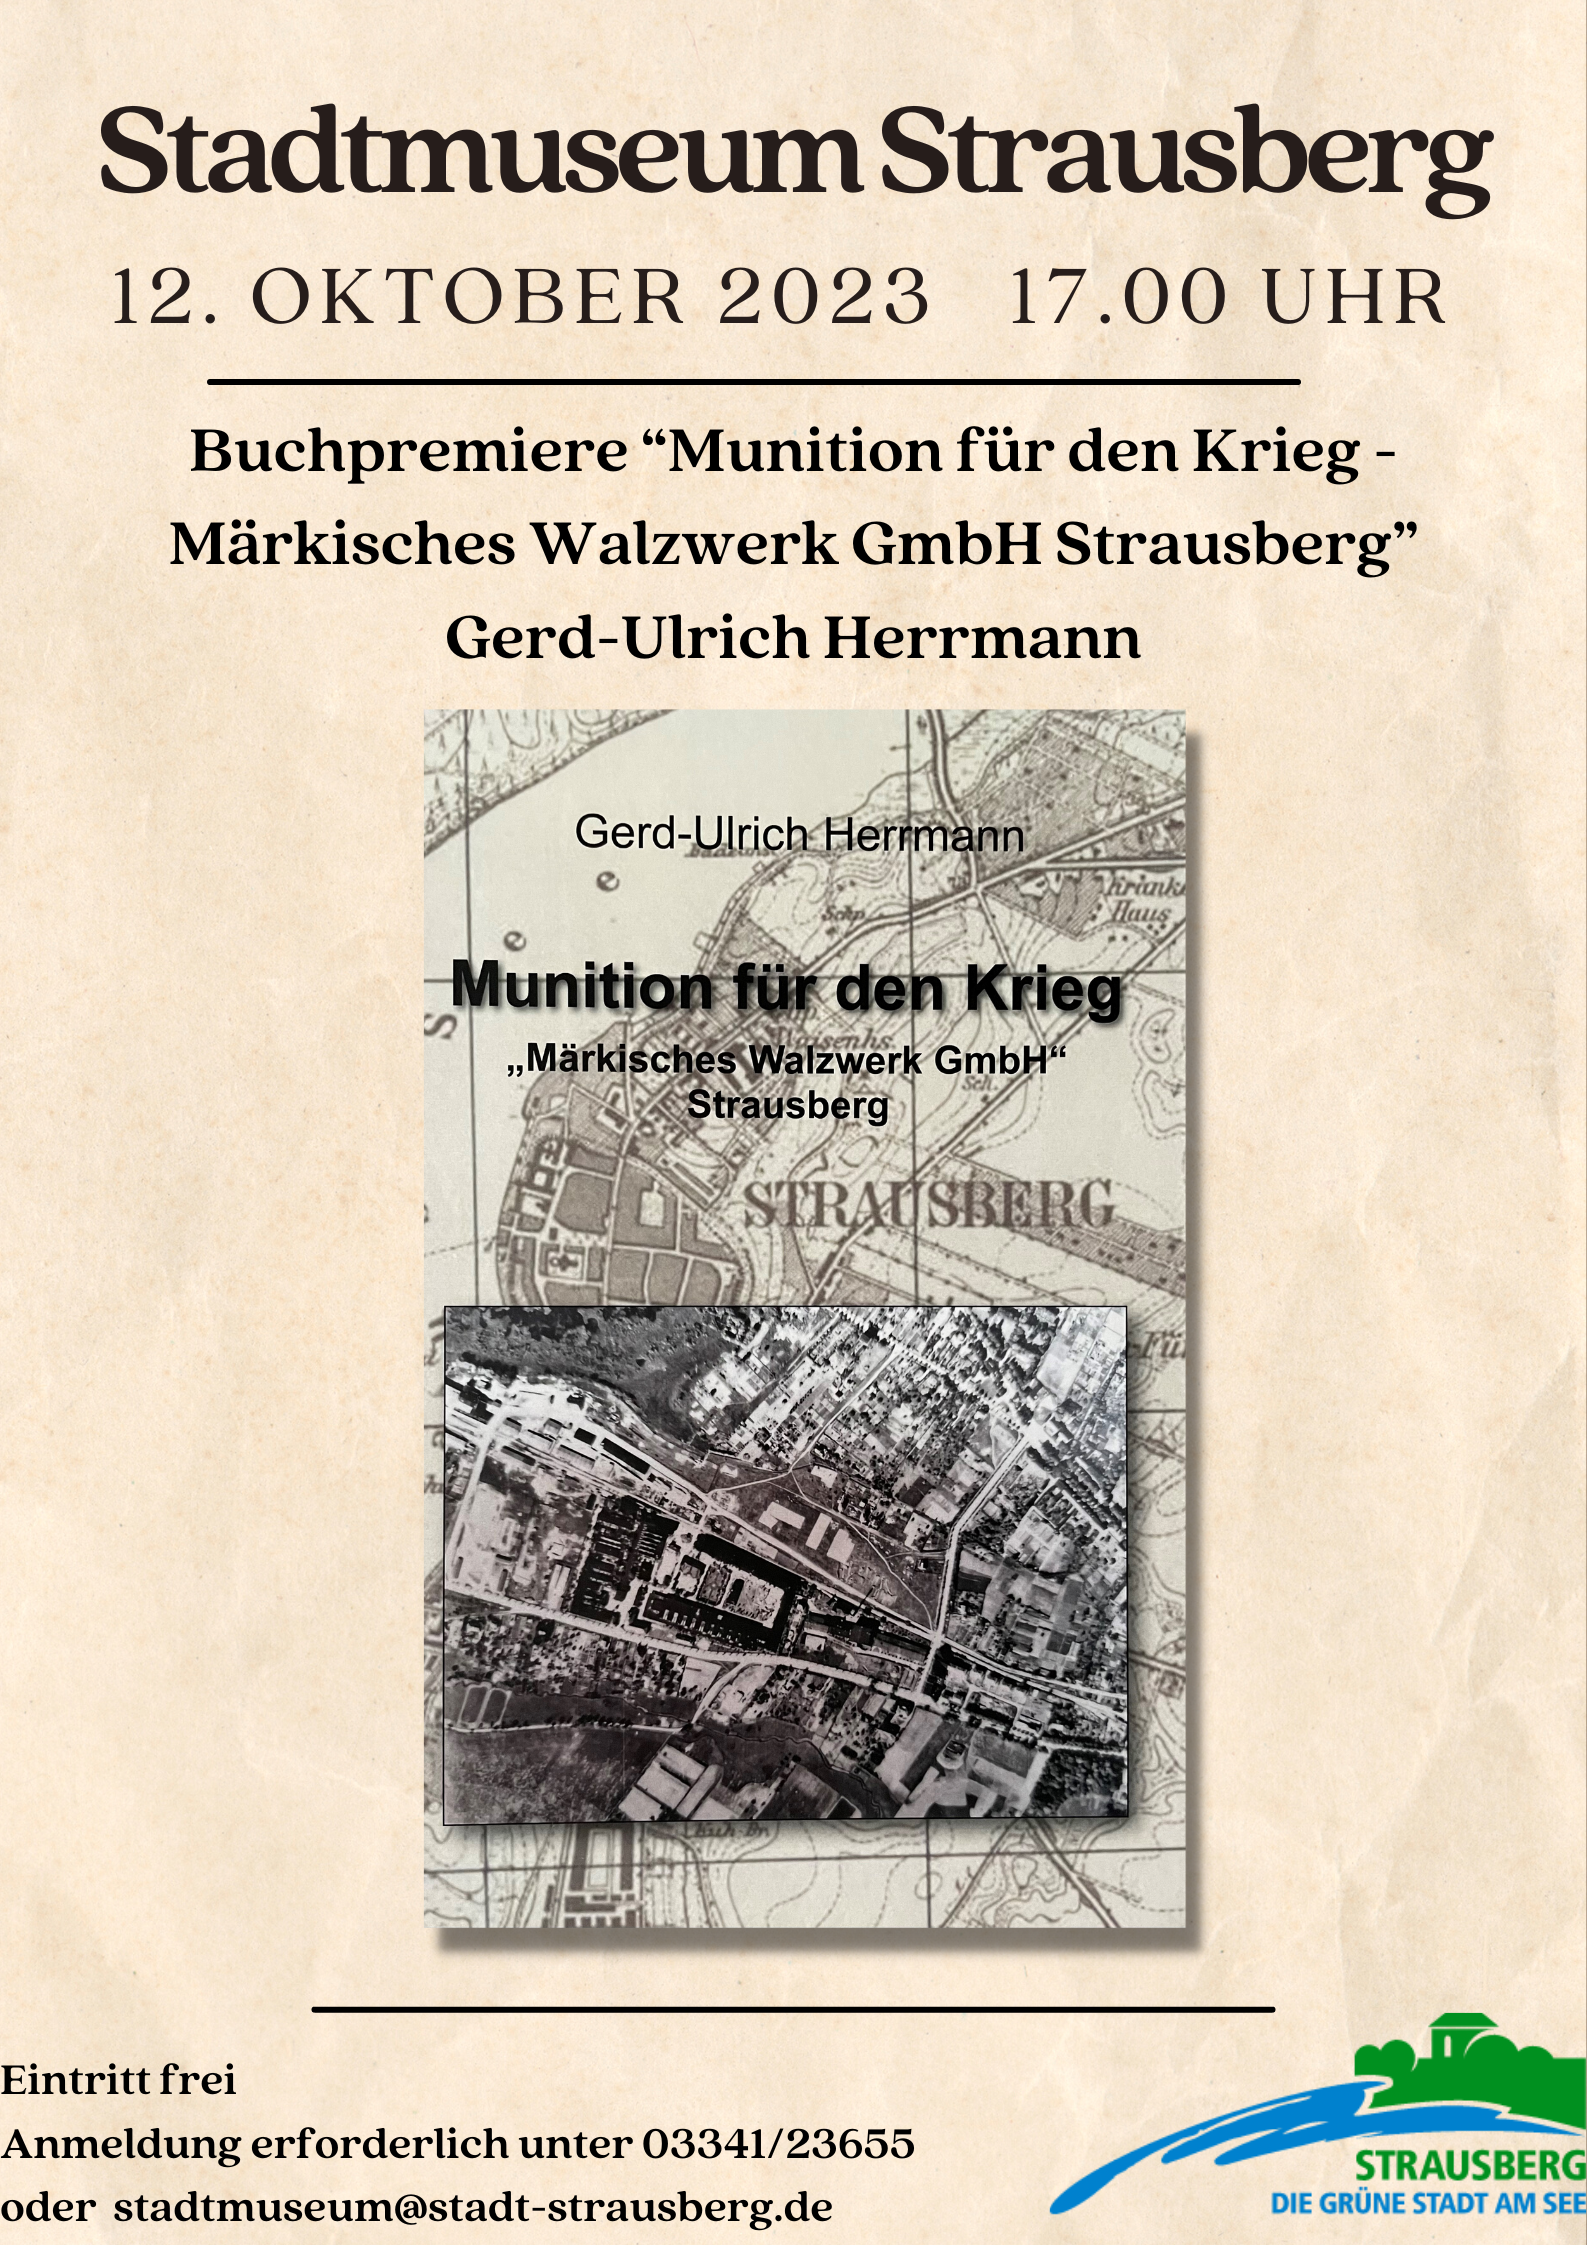 Plakat Buchpremiere Gerd-Ulrich Herrmann im Stadtmuseum Strausberg 12.10.2023